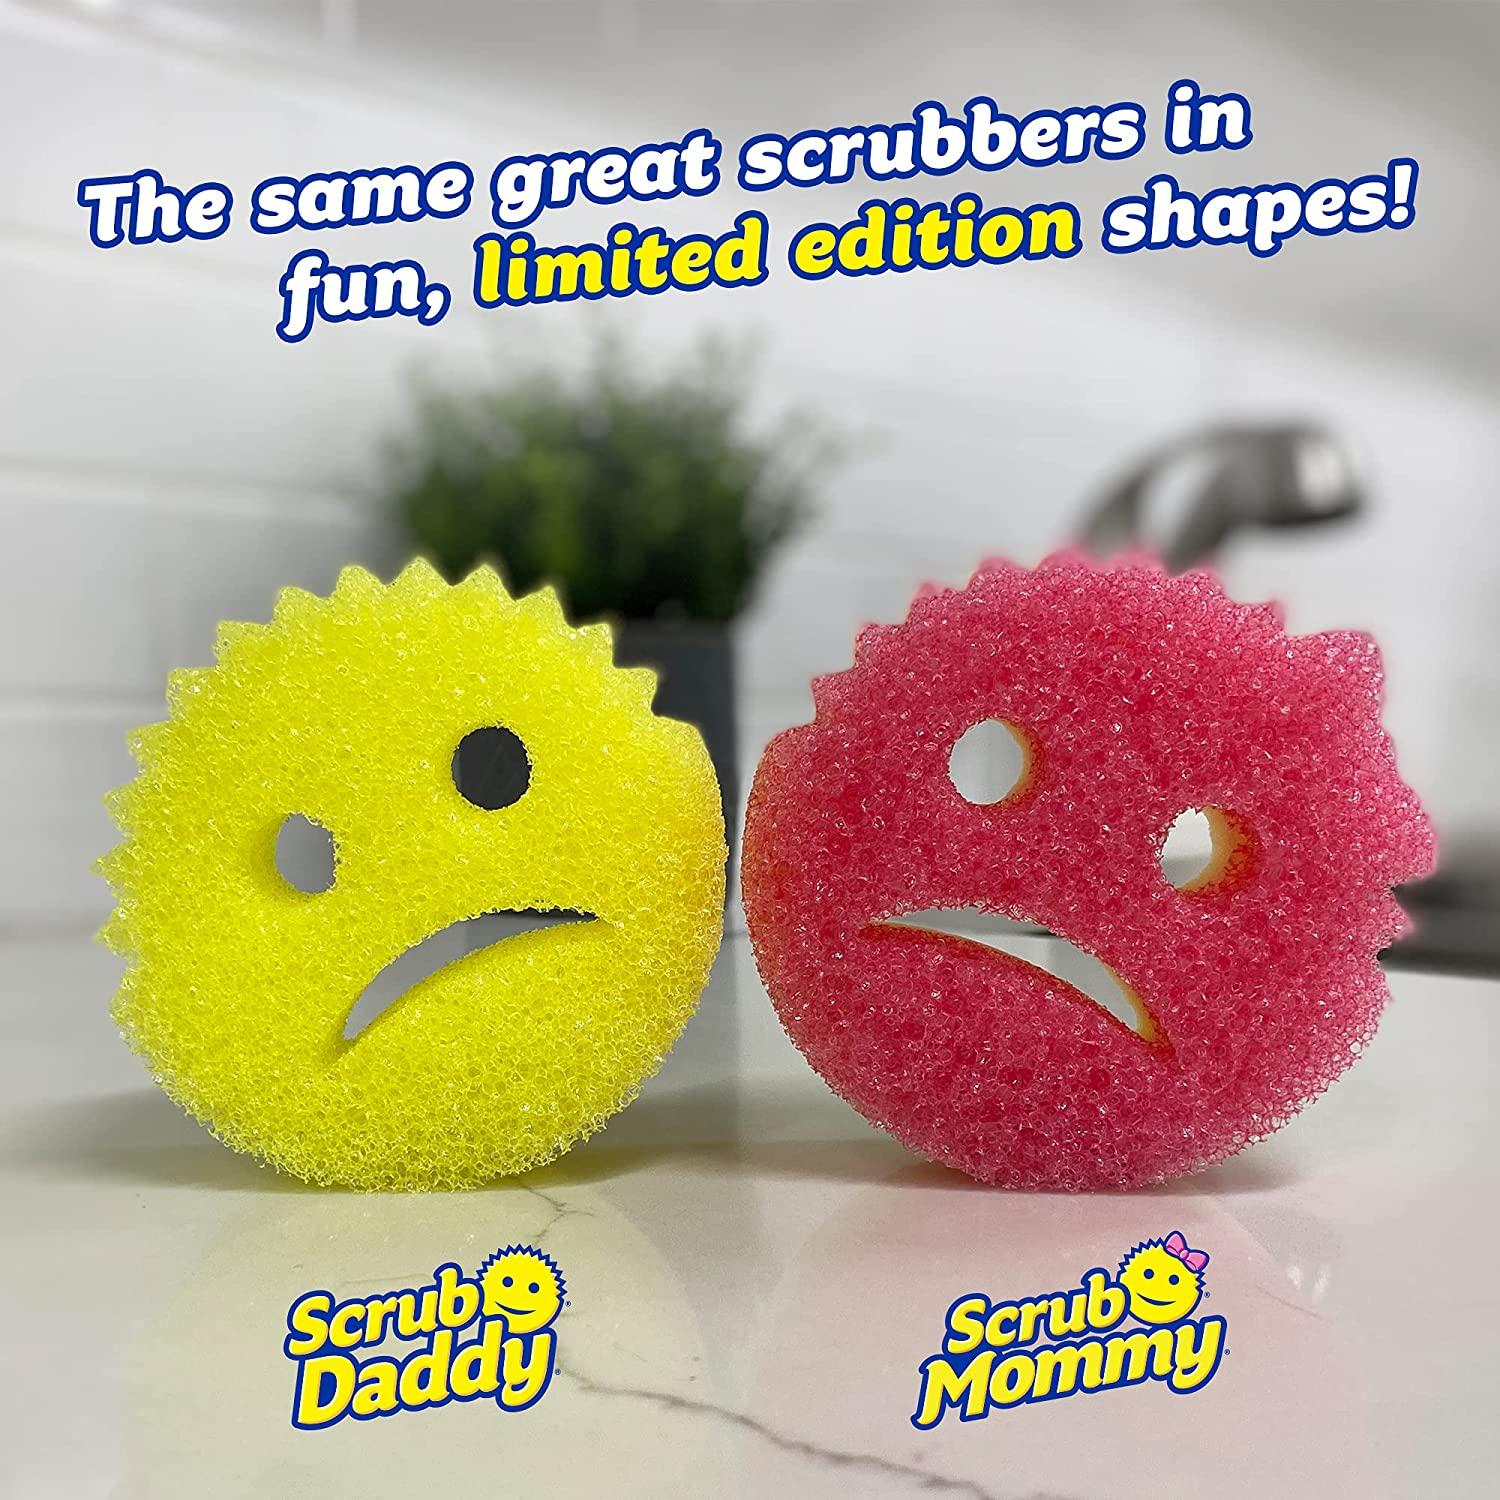 Scrub Daddy vs. Scrub Mommy: Which One Works Best?